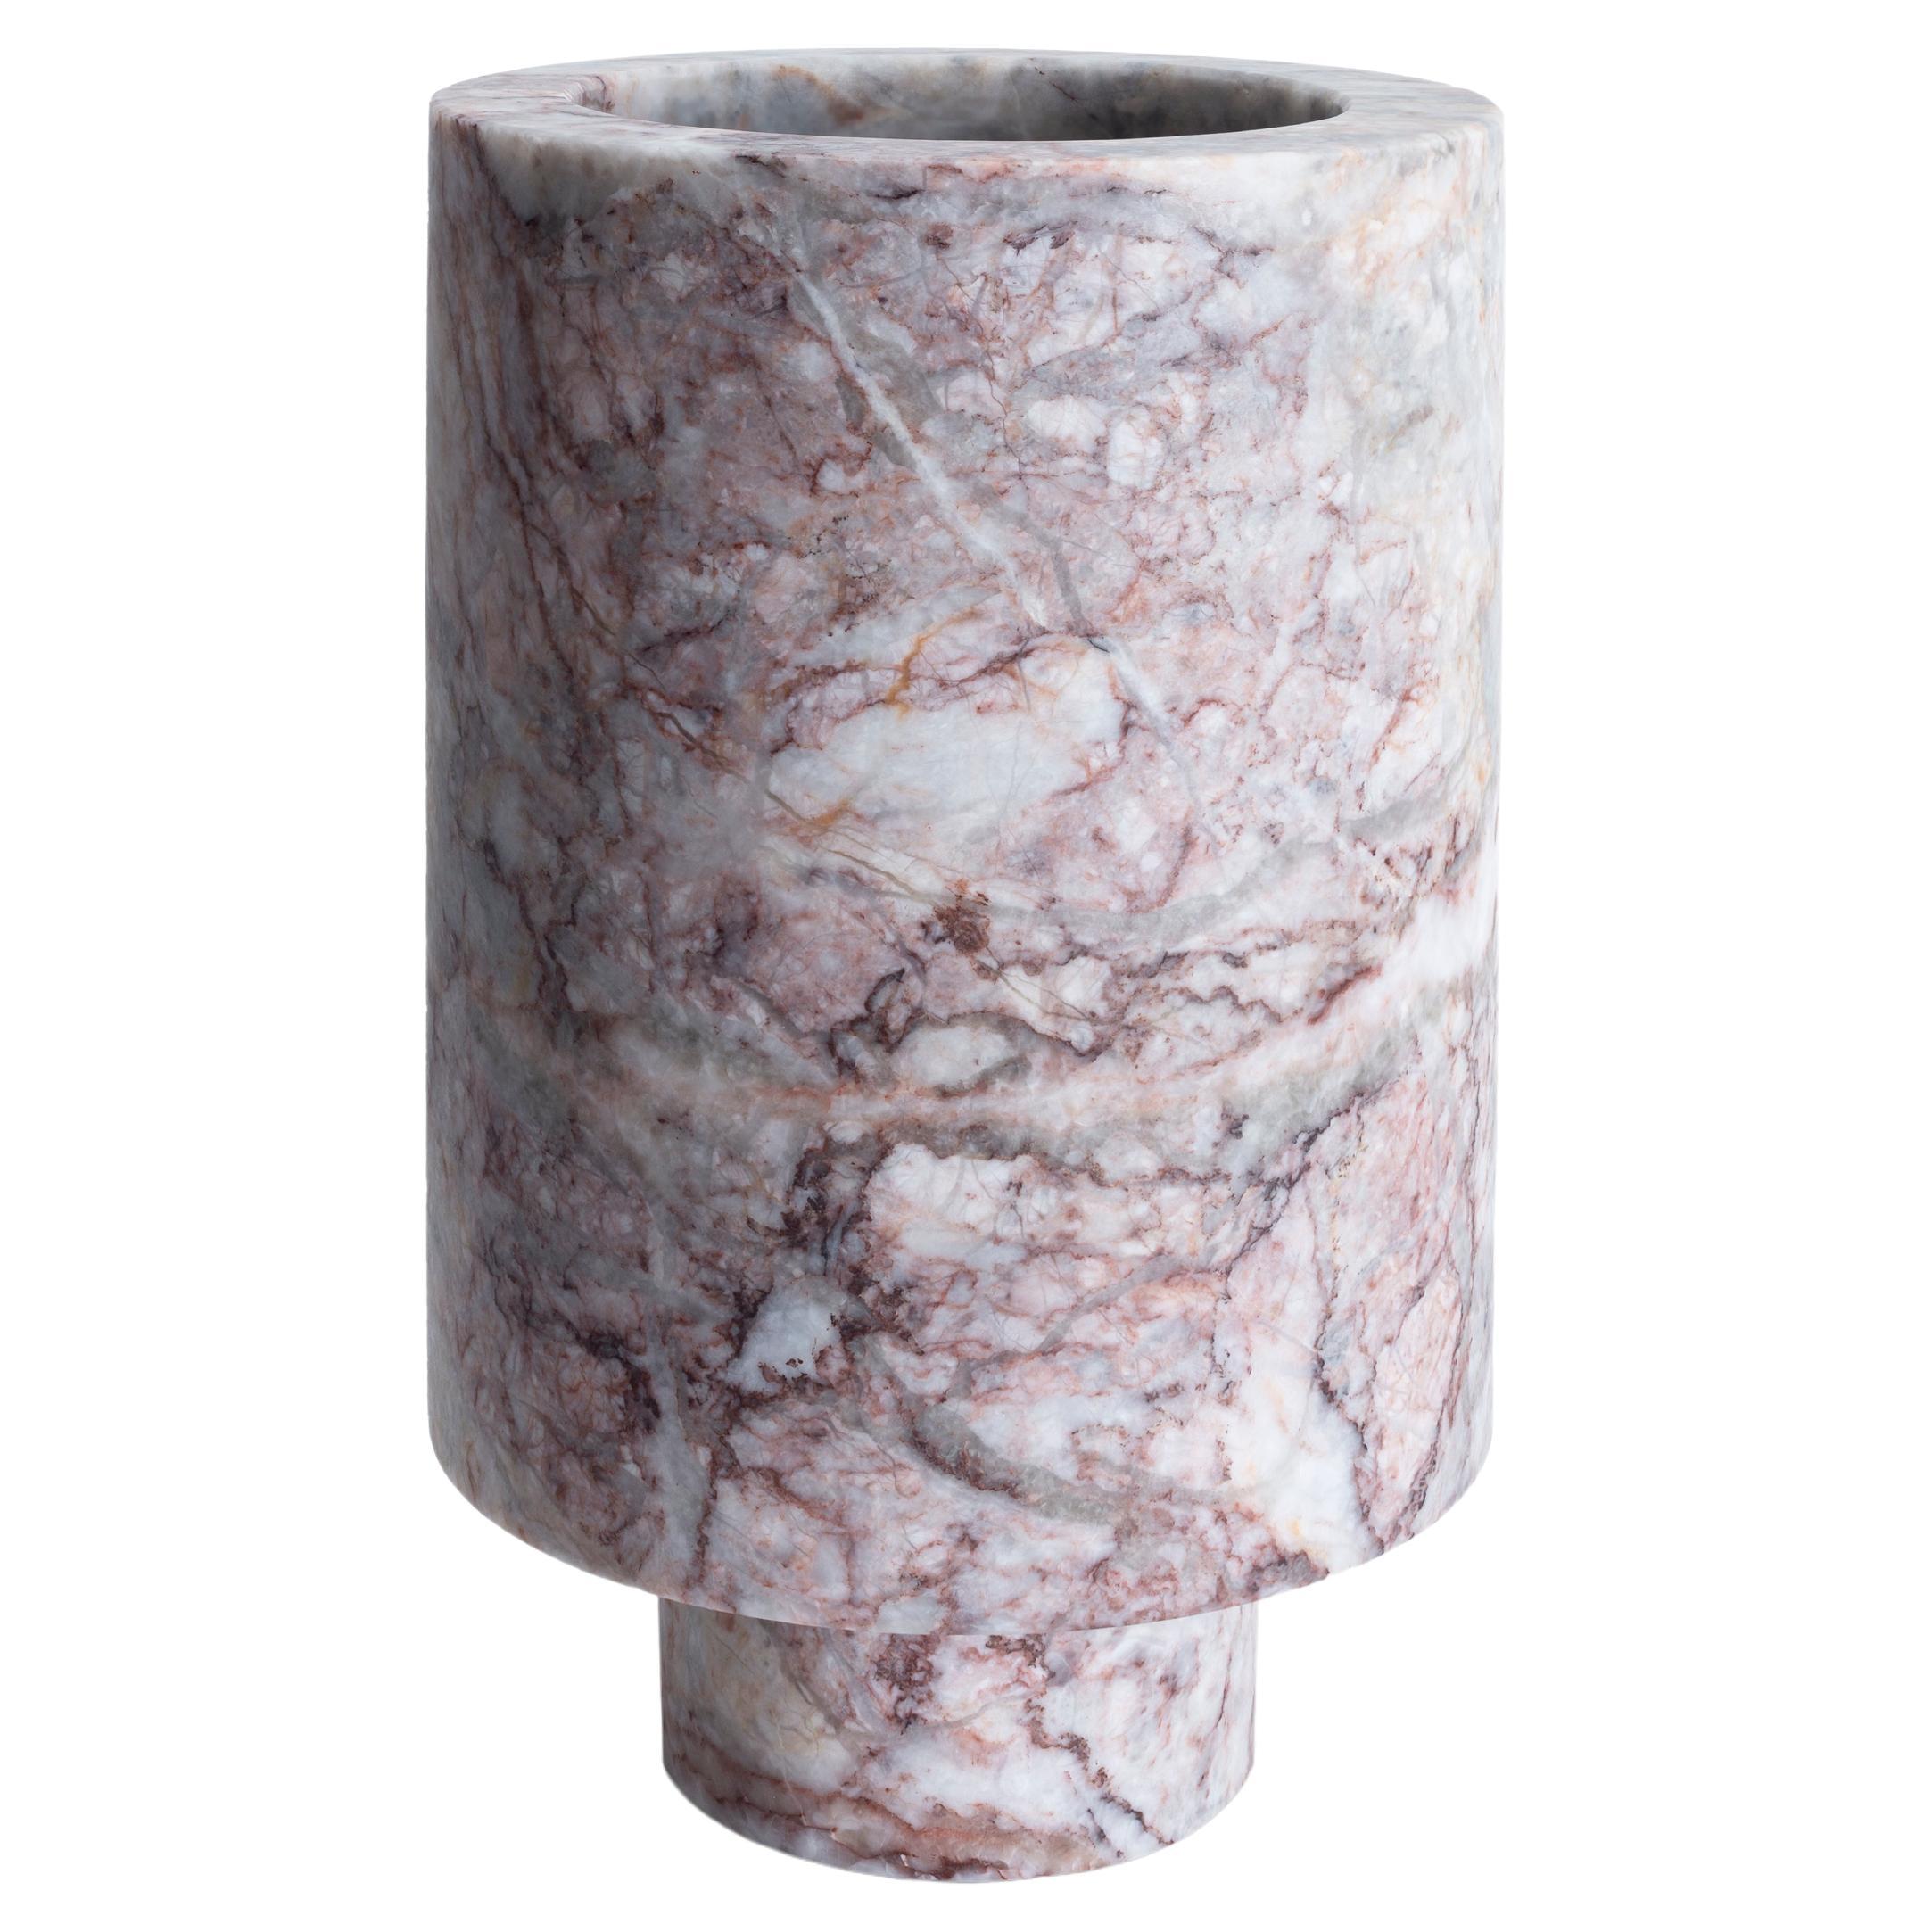 New Modern Flower Vase in Marble, Creator Karen Chekerdjian, stock For Sale